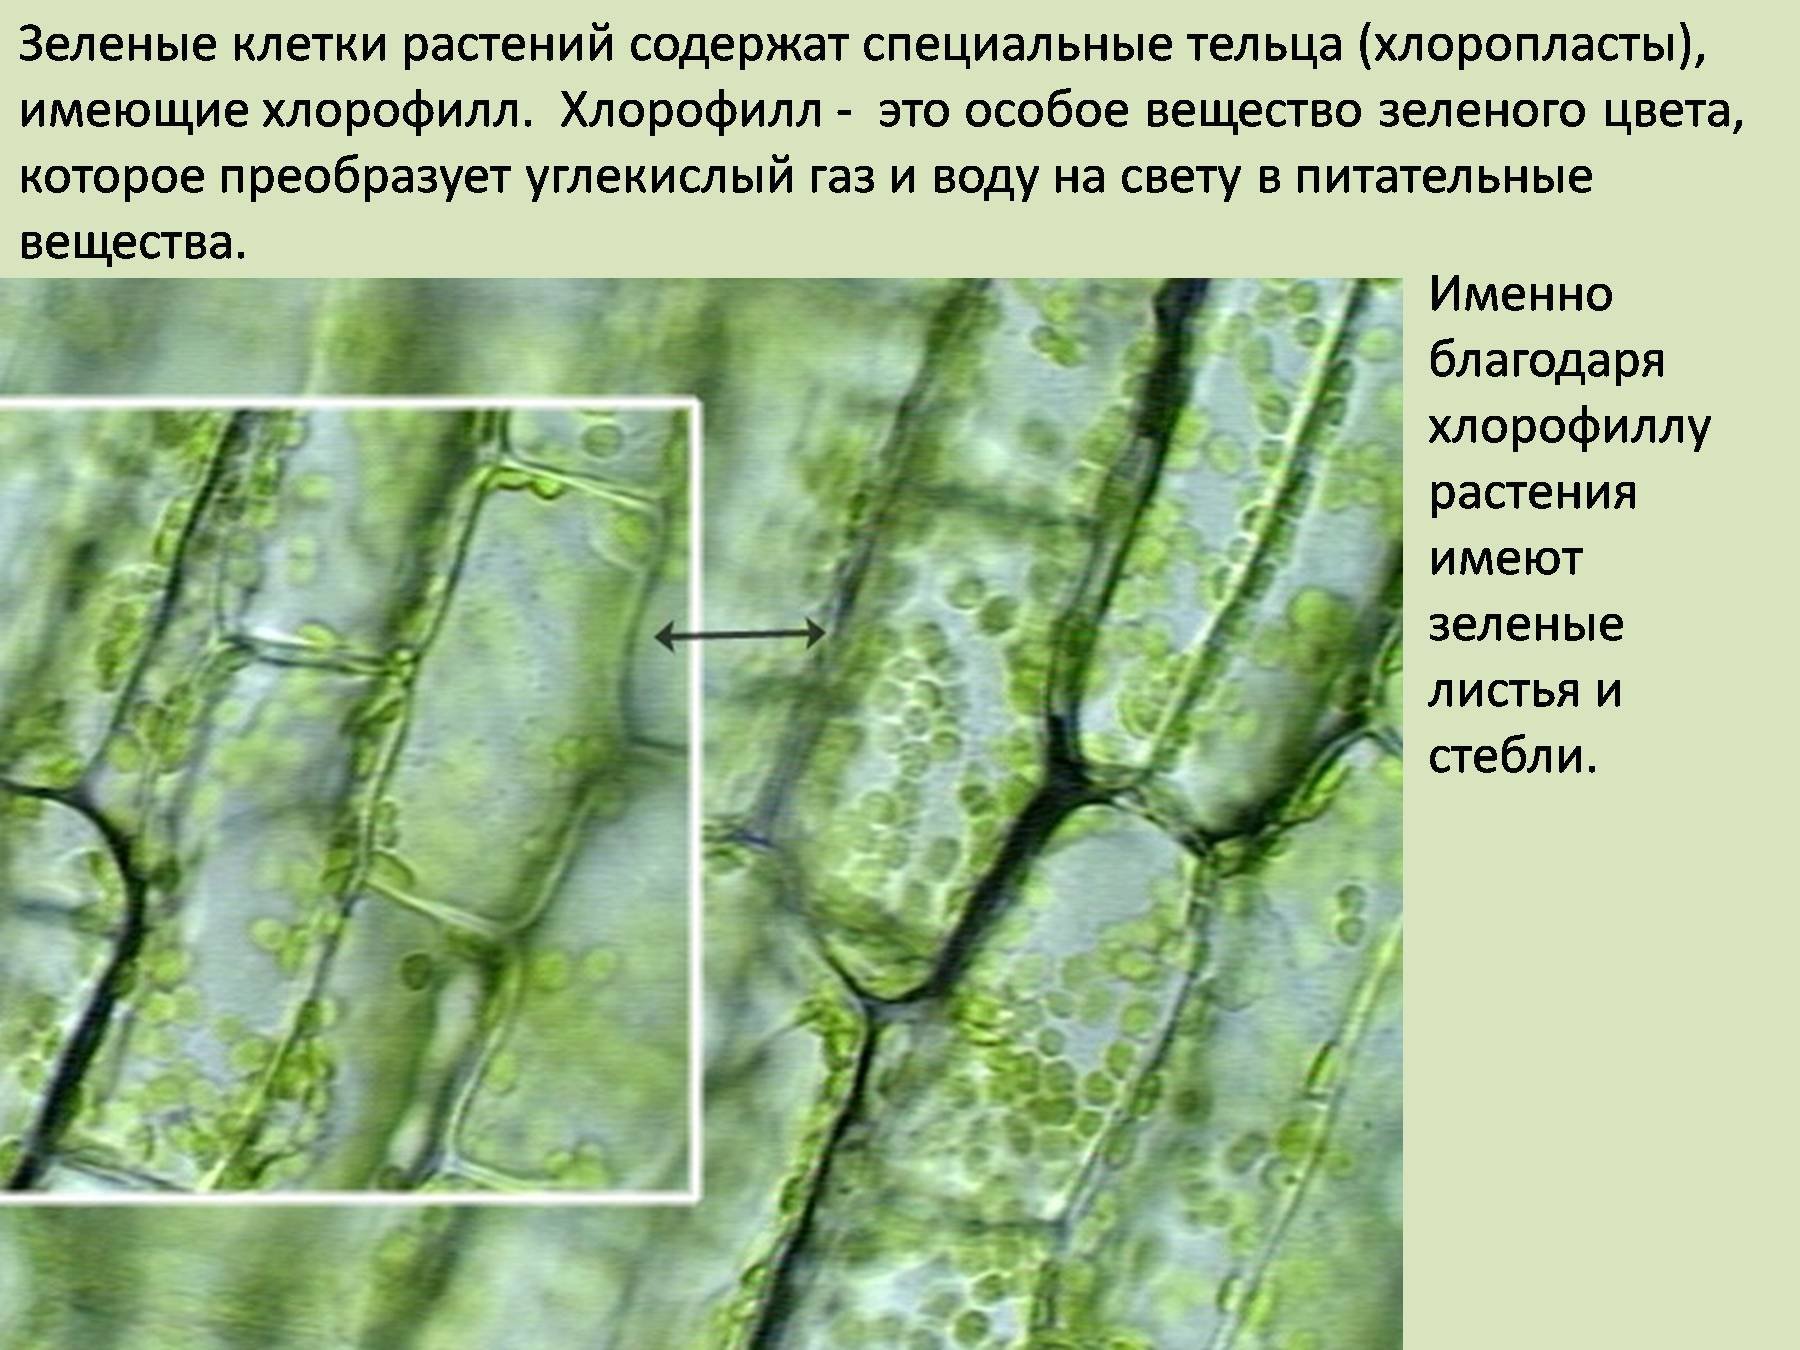 Хлоропласты в клетках листьев крупные. Хлоропласты элодеи. Клетка листа хлоропласты хлорофилл. Хлорофилл в растительной клетке. Клетка элодеи хлорофилл.